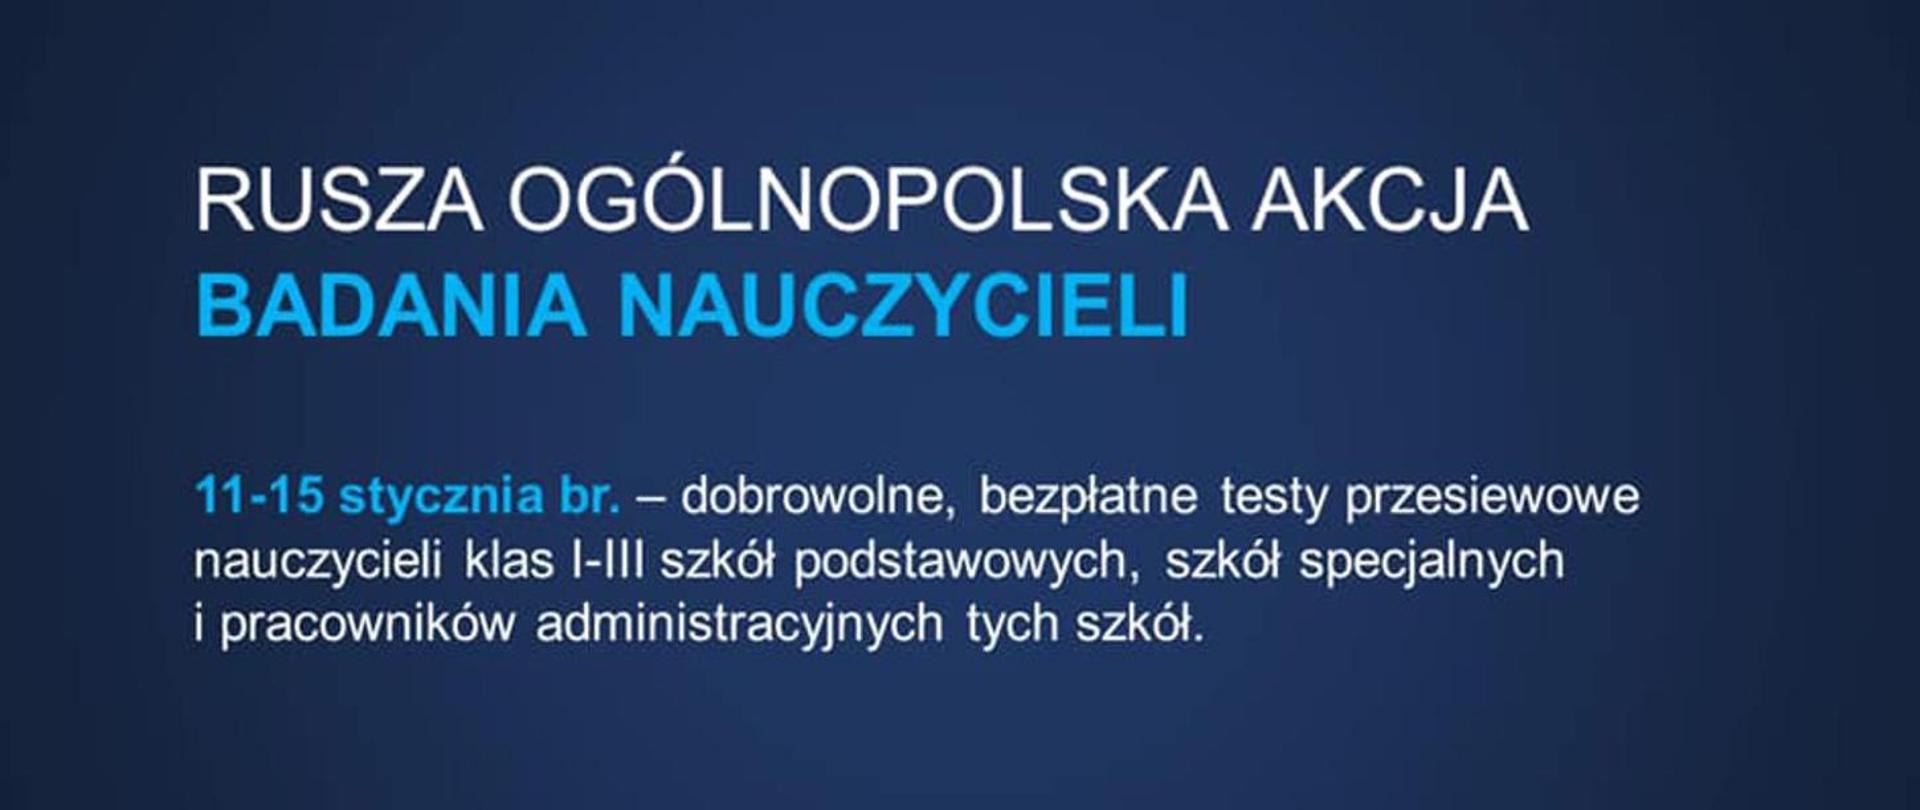 Baner na niebieskim tle z napisem "Rusza ogólnopolska akcja badania nauczycieli wraz z podaniem terminu badań przypadającym na 11 do 15 stycznia b.r.